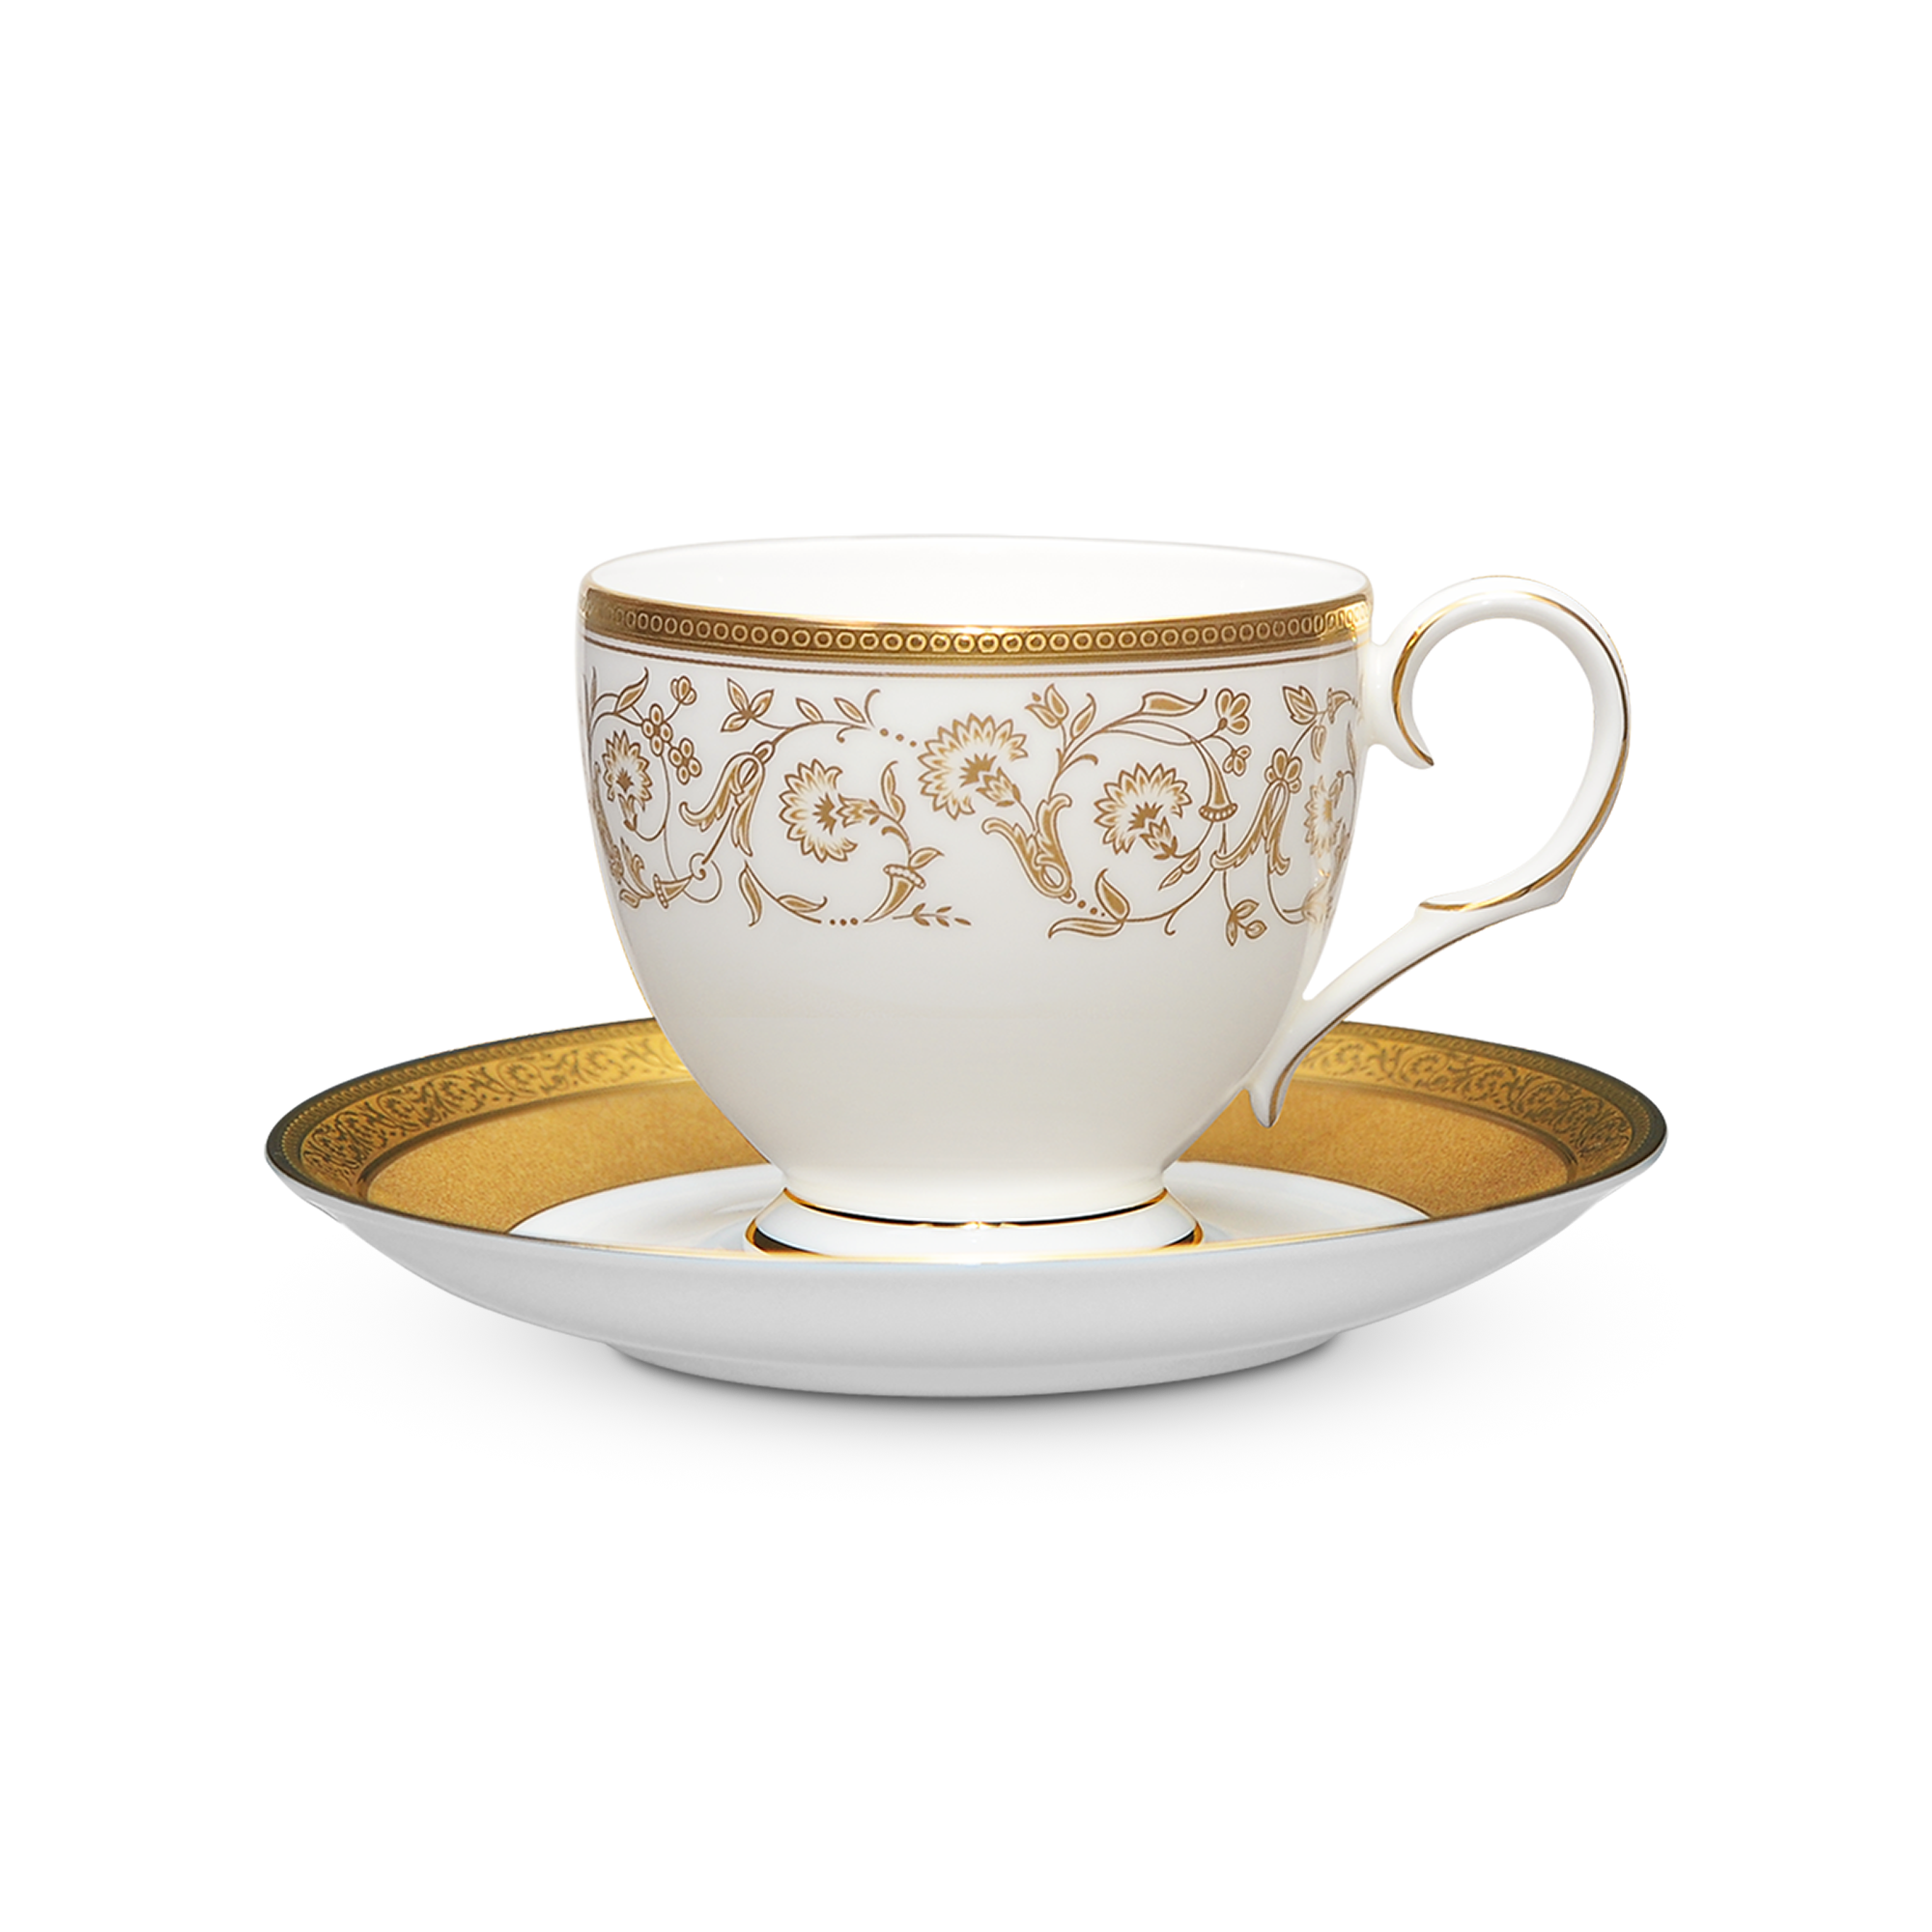  Chén trà (tách trà) kèm đĩa lót dung tích 250ml sứ xương | Summit Gold 4912L-T50788A 